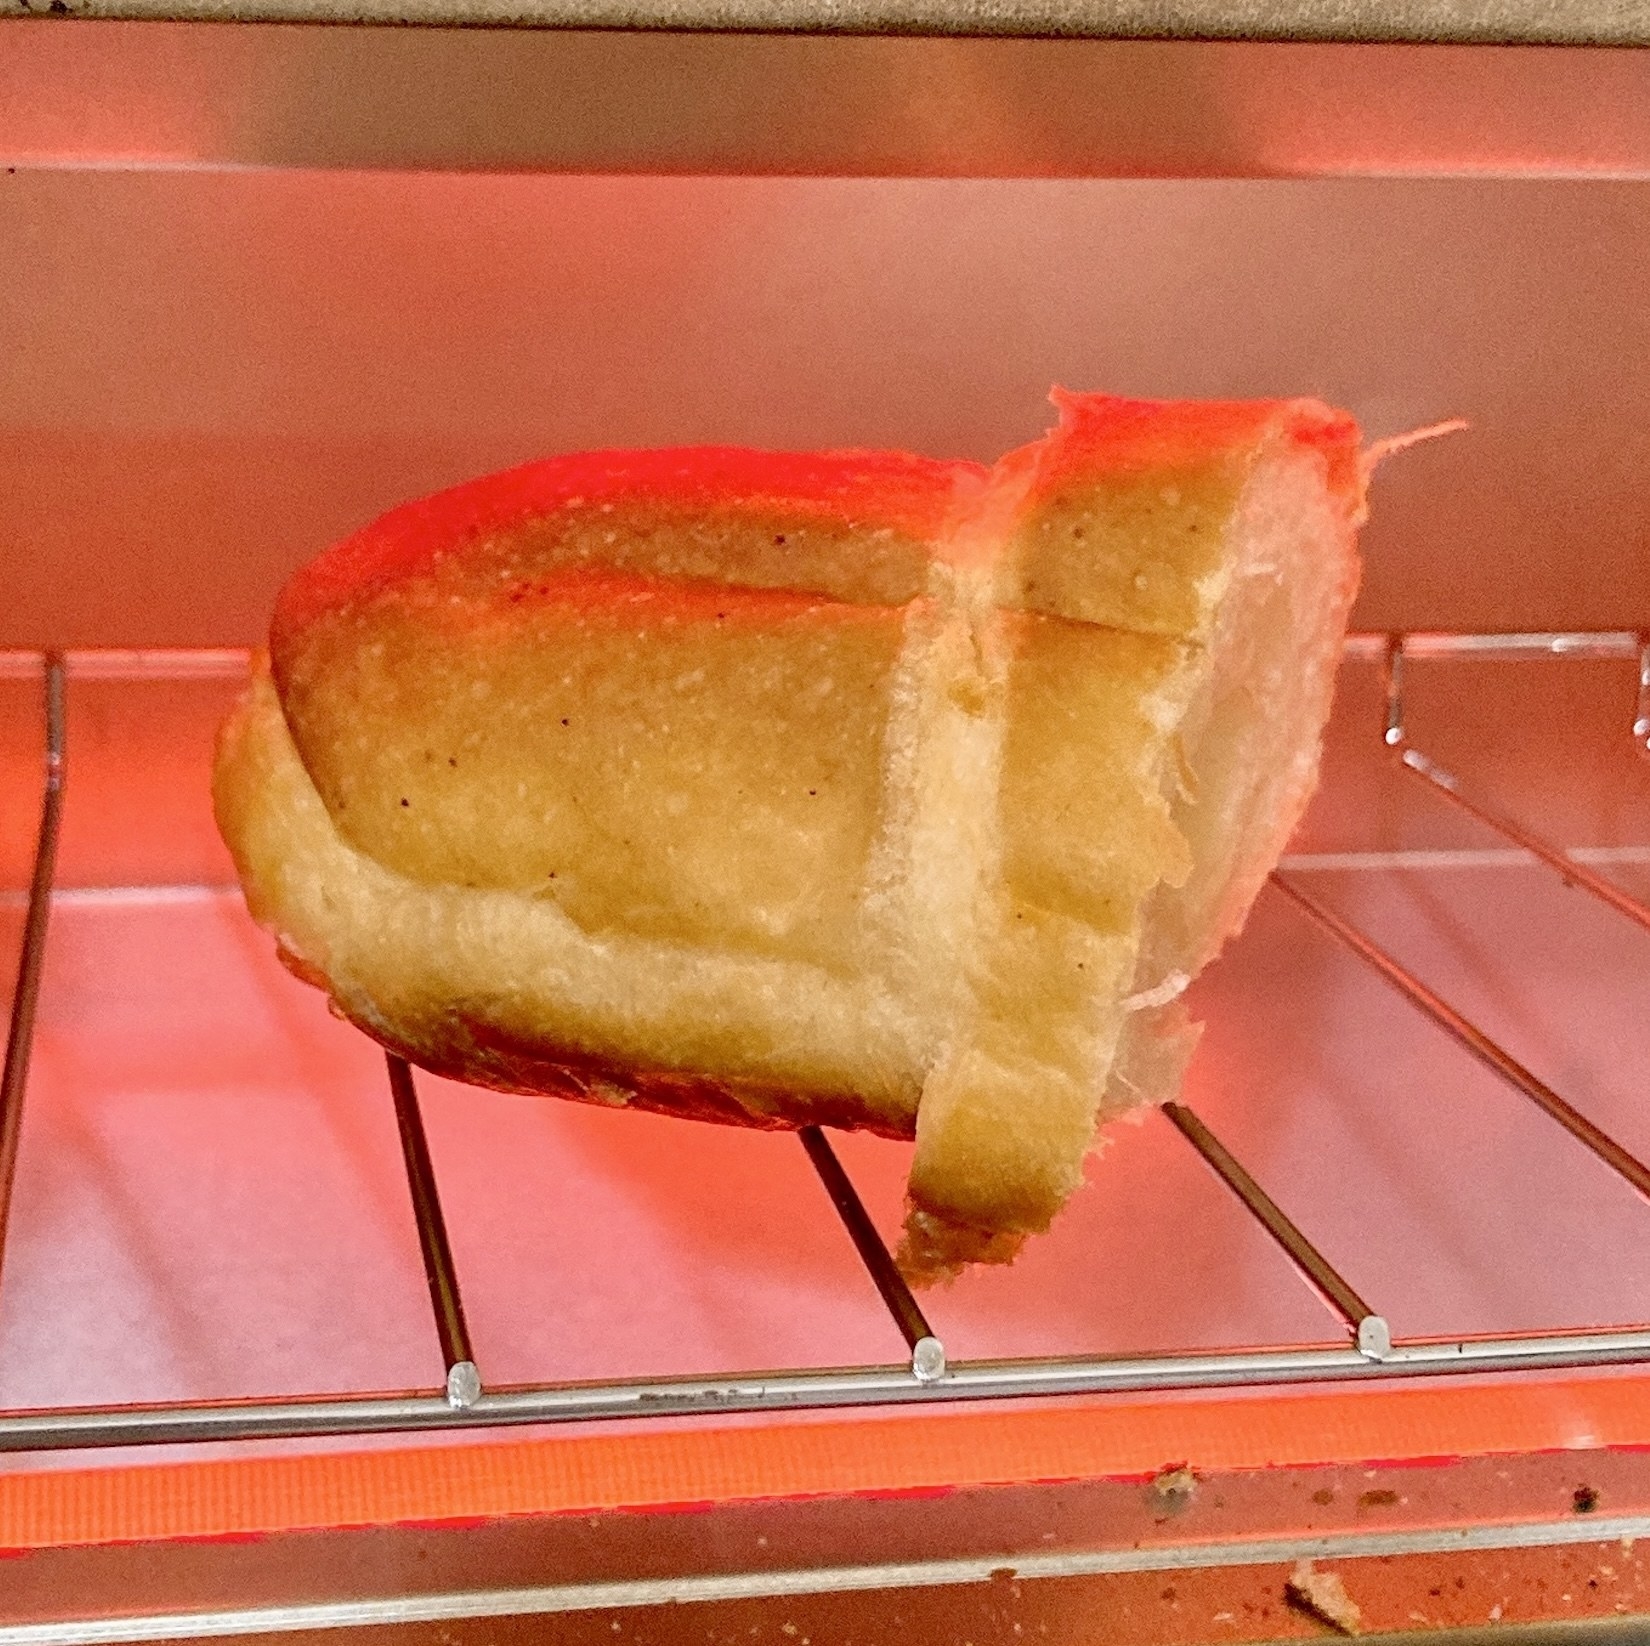 FamilyMartのおすすめパン「ジュワっとした塩バターパン」